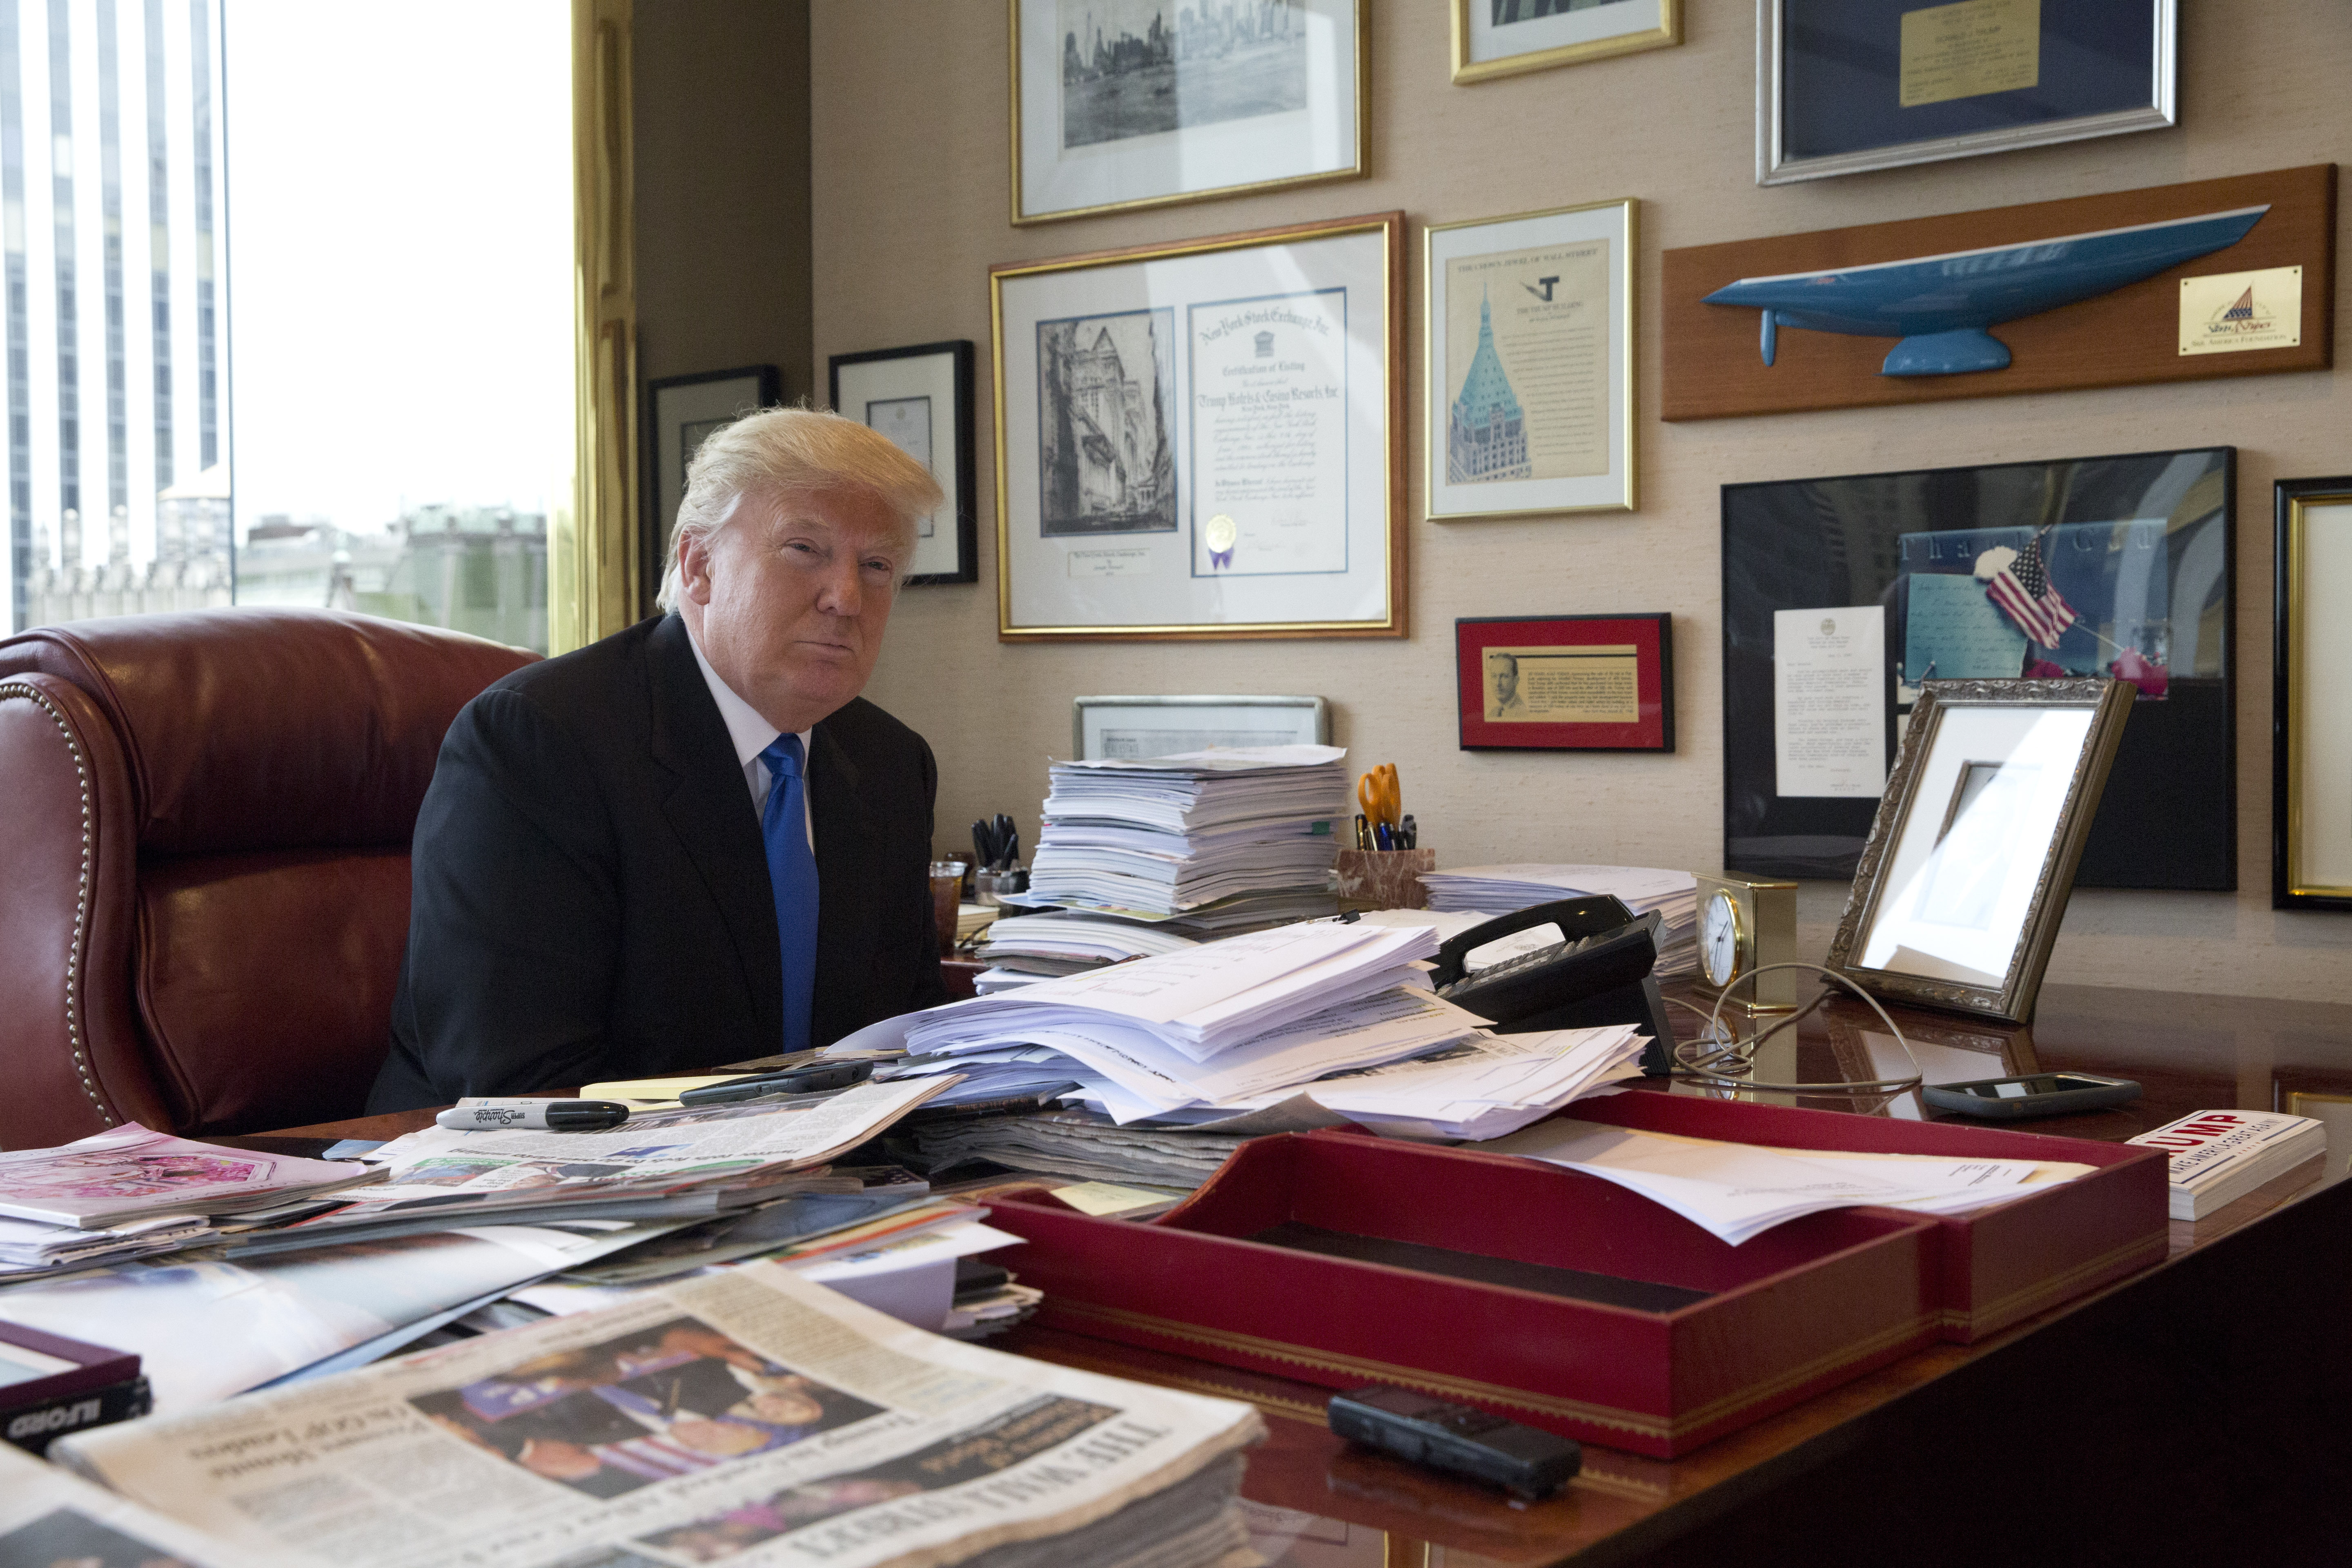 Avis: Trump hadde mer enn 300 graderte dokumenter hjemme